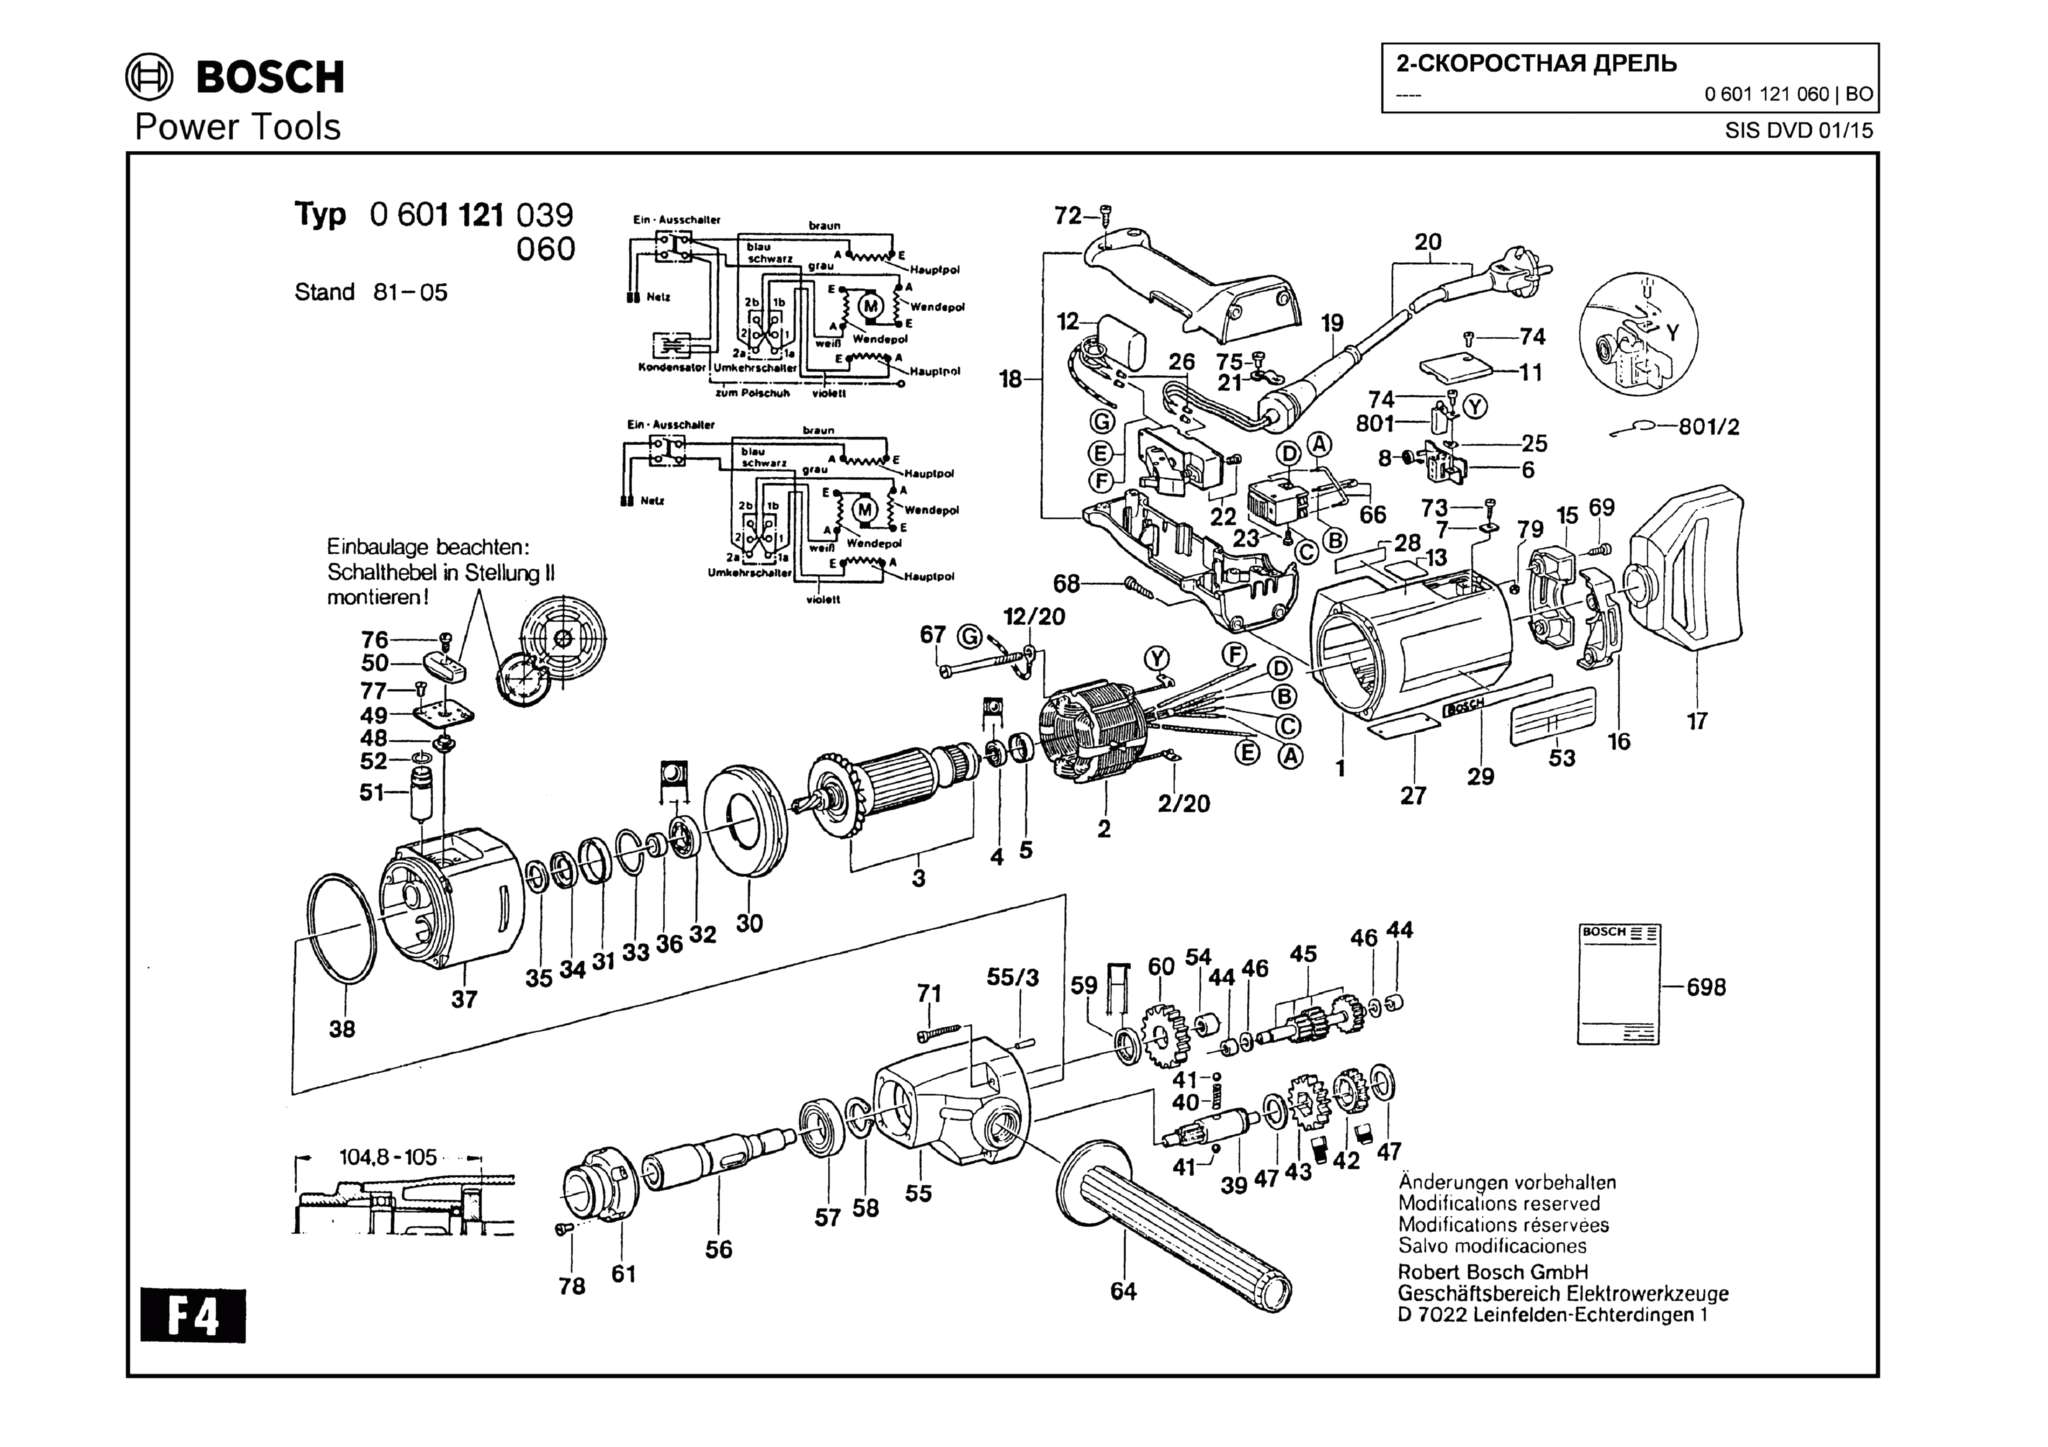 Запчасти, схема и деталировка Bosch (ТИП 0601121060)